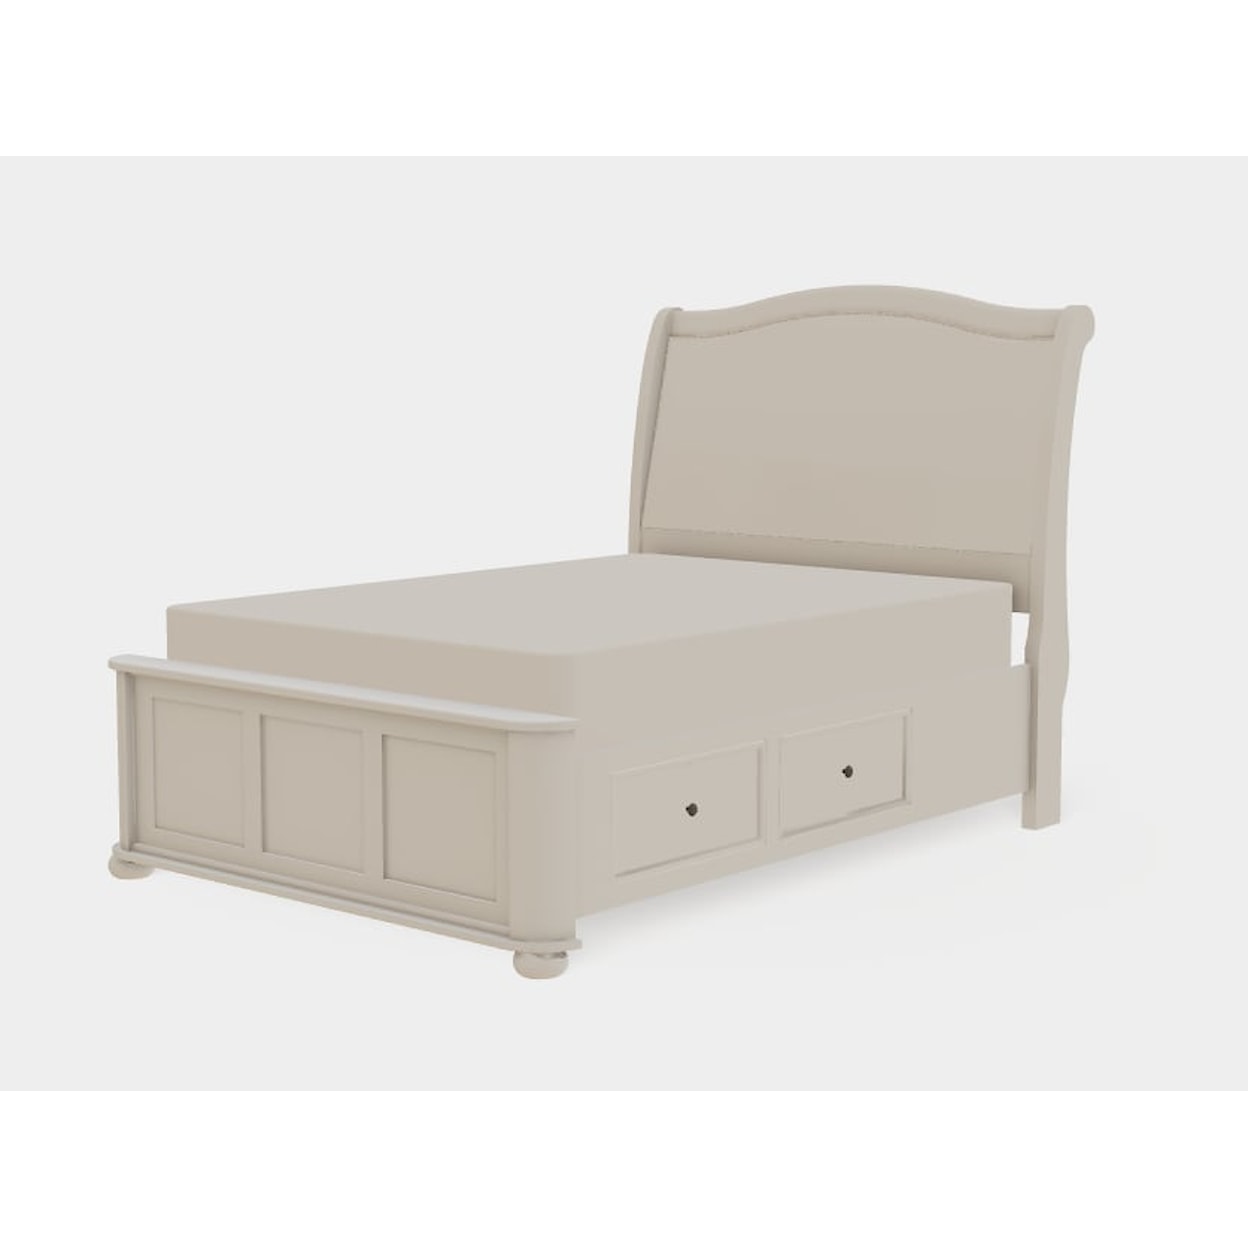 Mavin Kingsport Full Upholstered Bed Right Drawerside